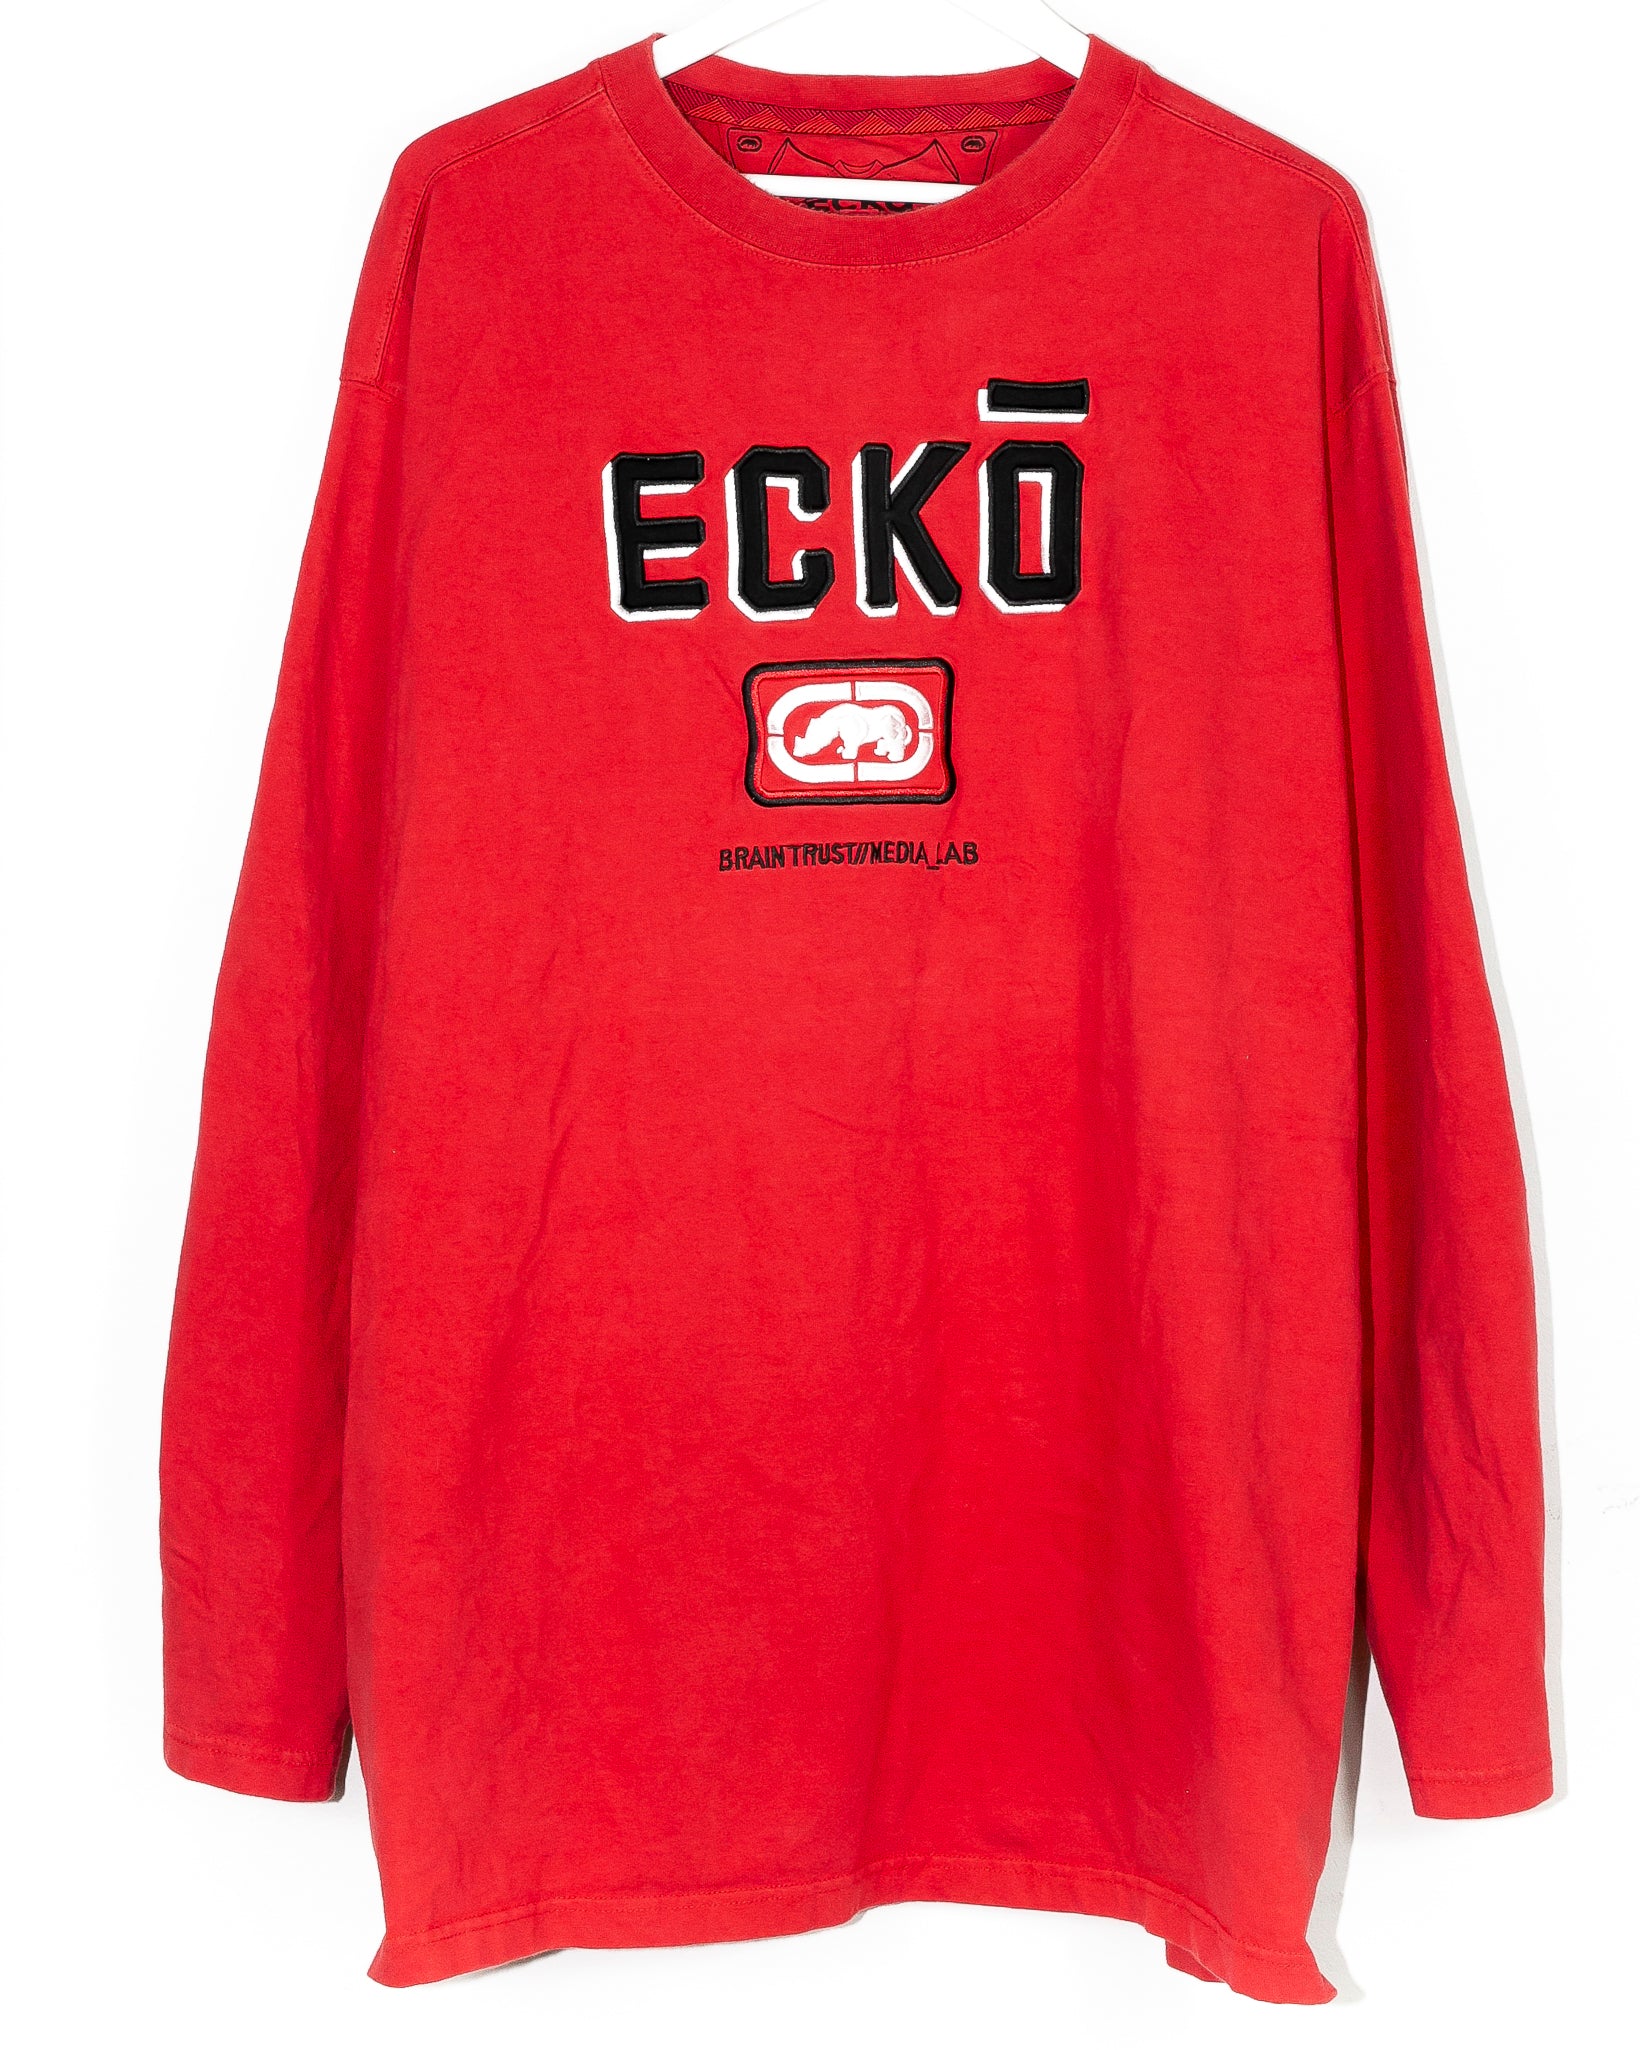 Vintage Ecko Long Sleeve T-shirt (XXL)